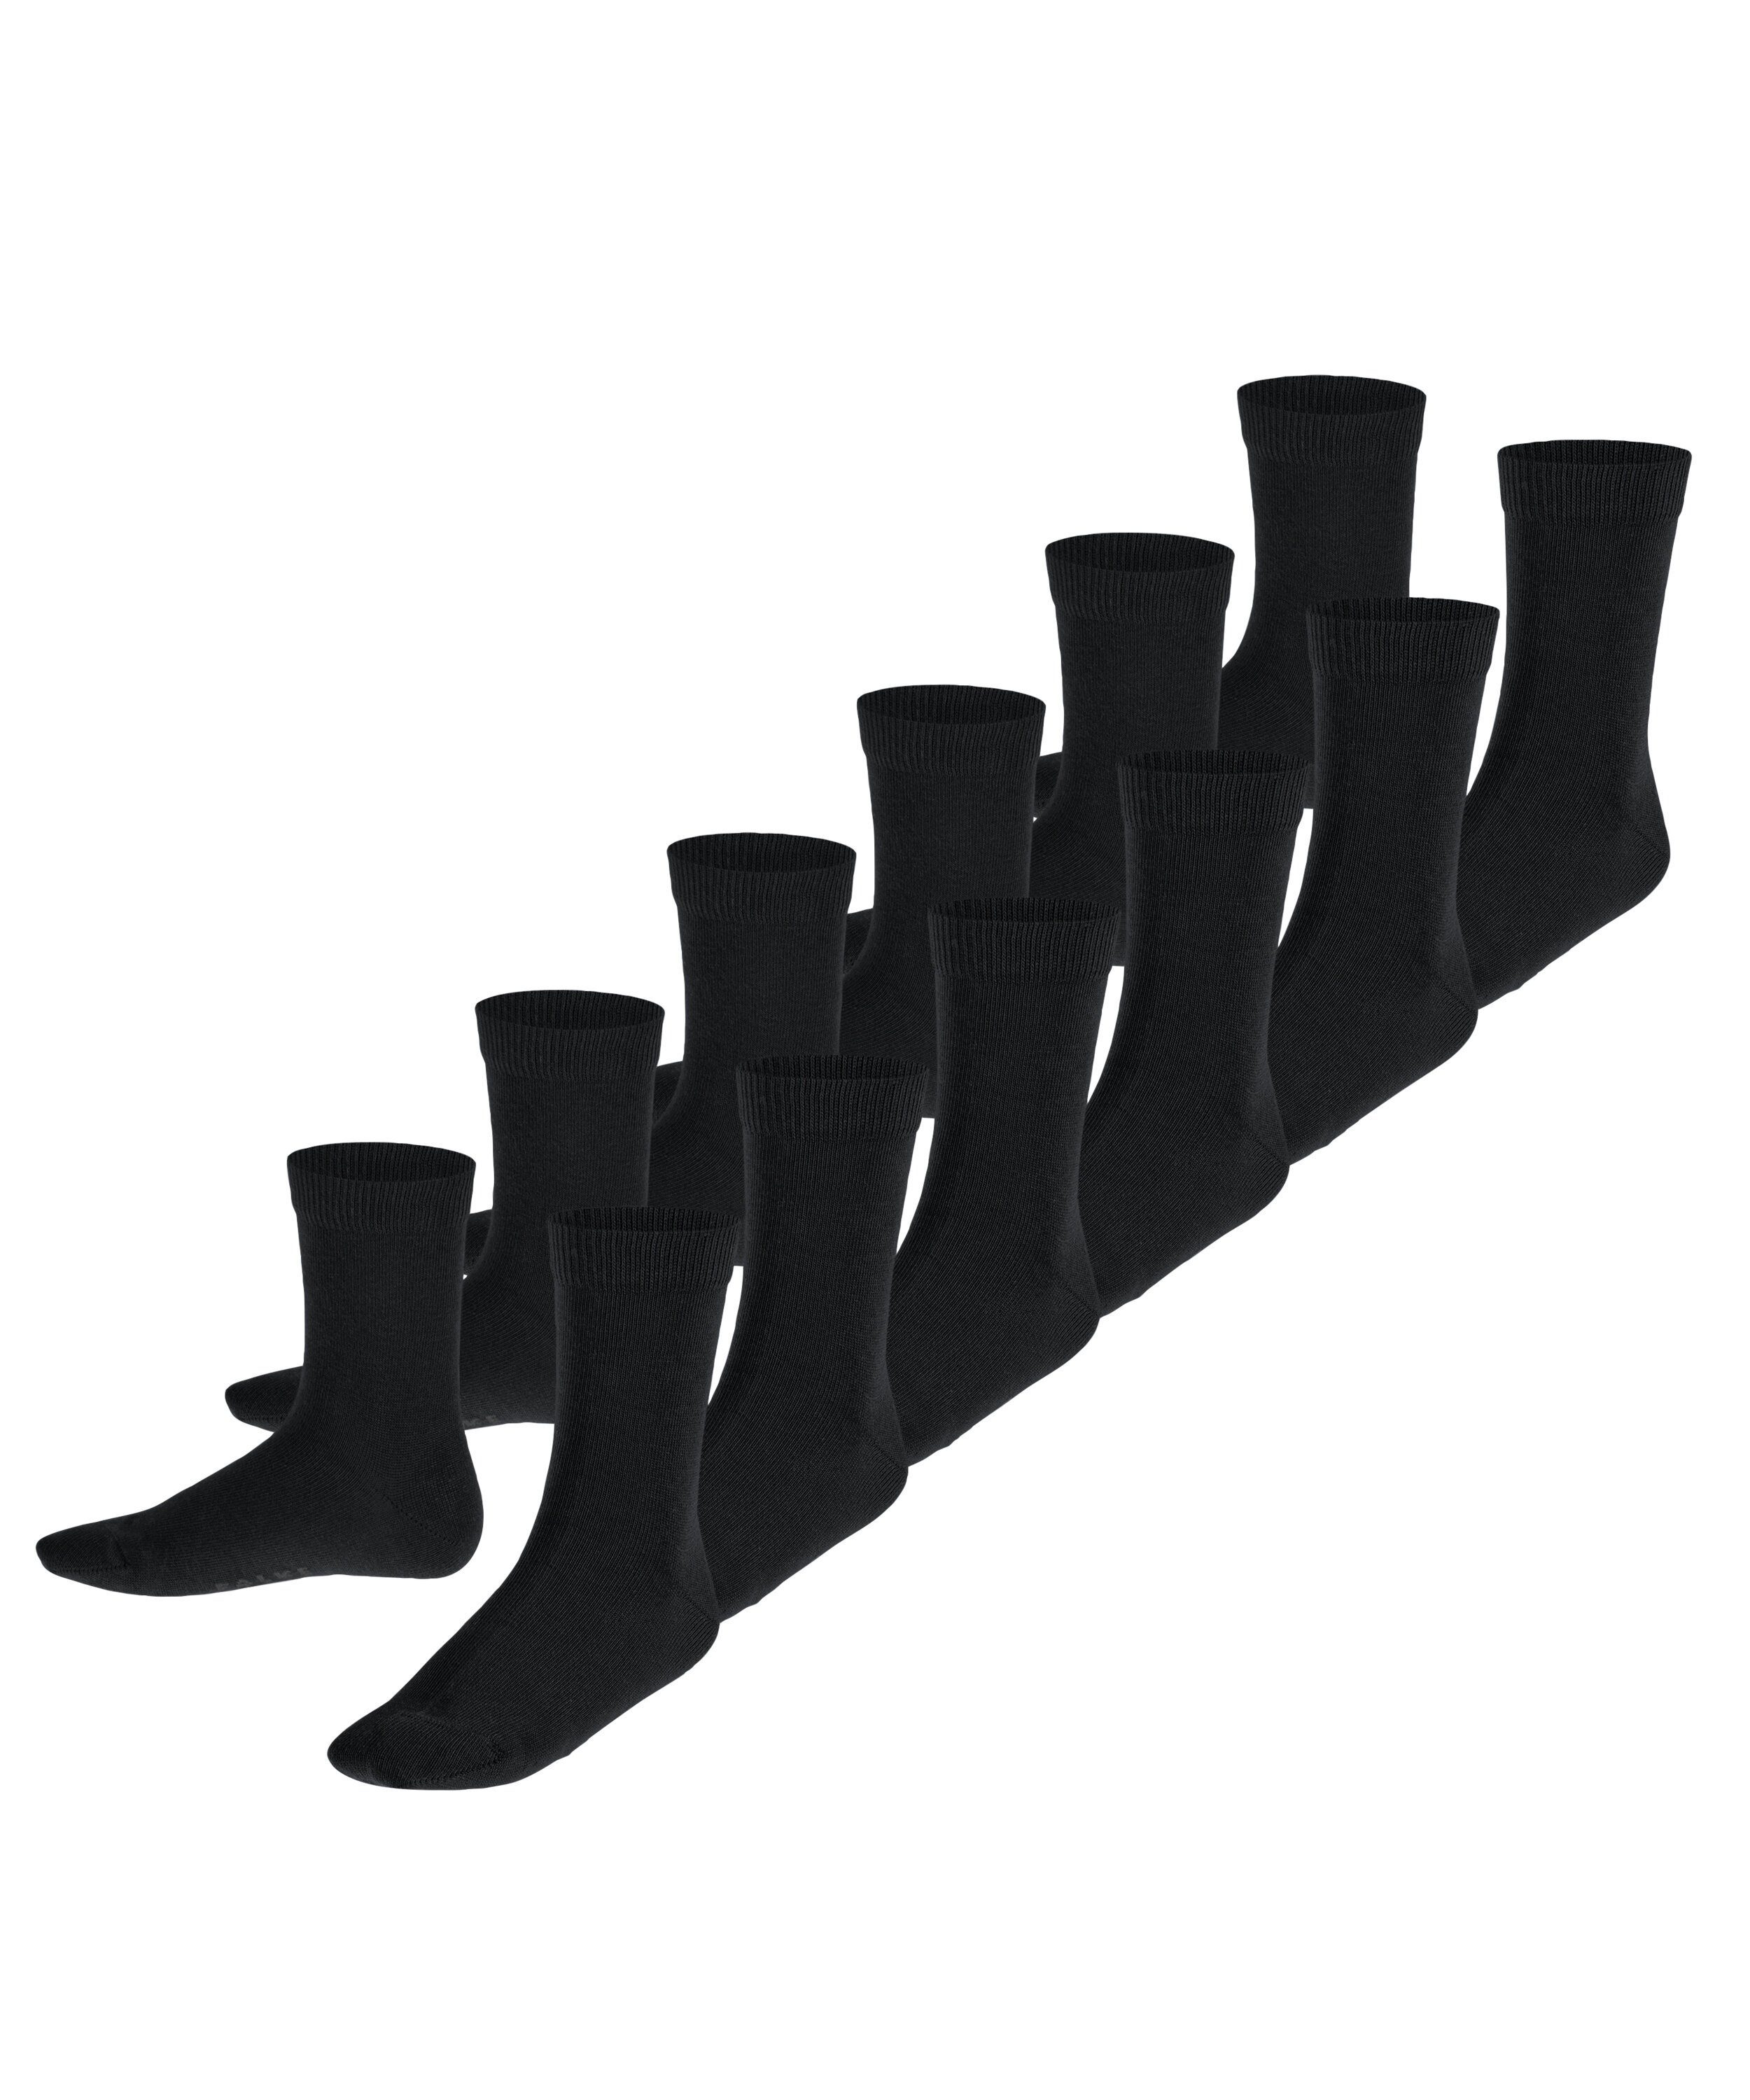 FALKE Socken Happy 6-Pack (6-Paar) sortiment (0010)